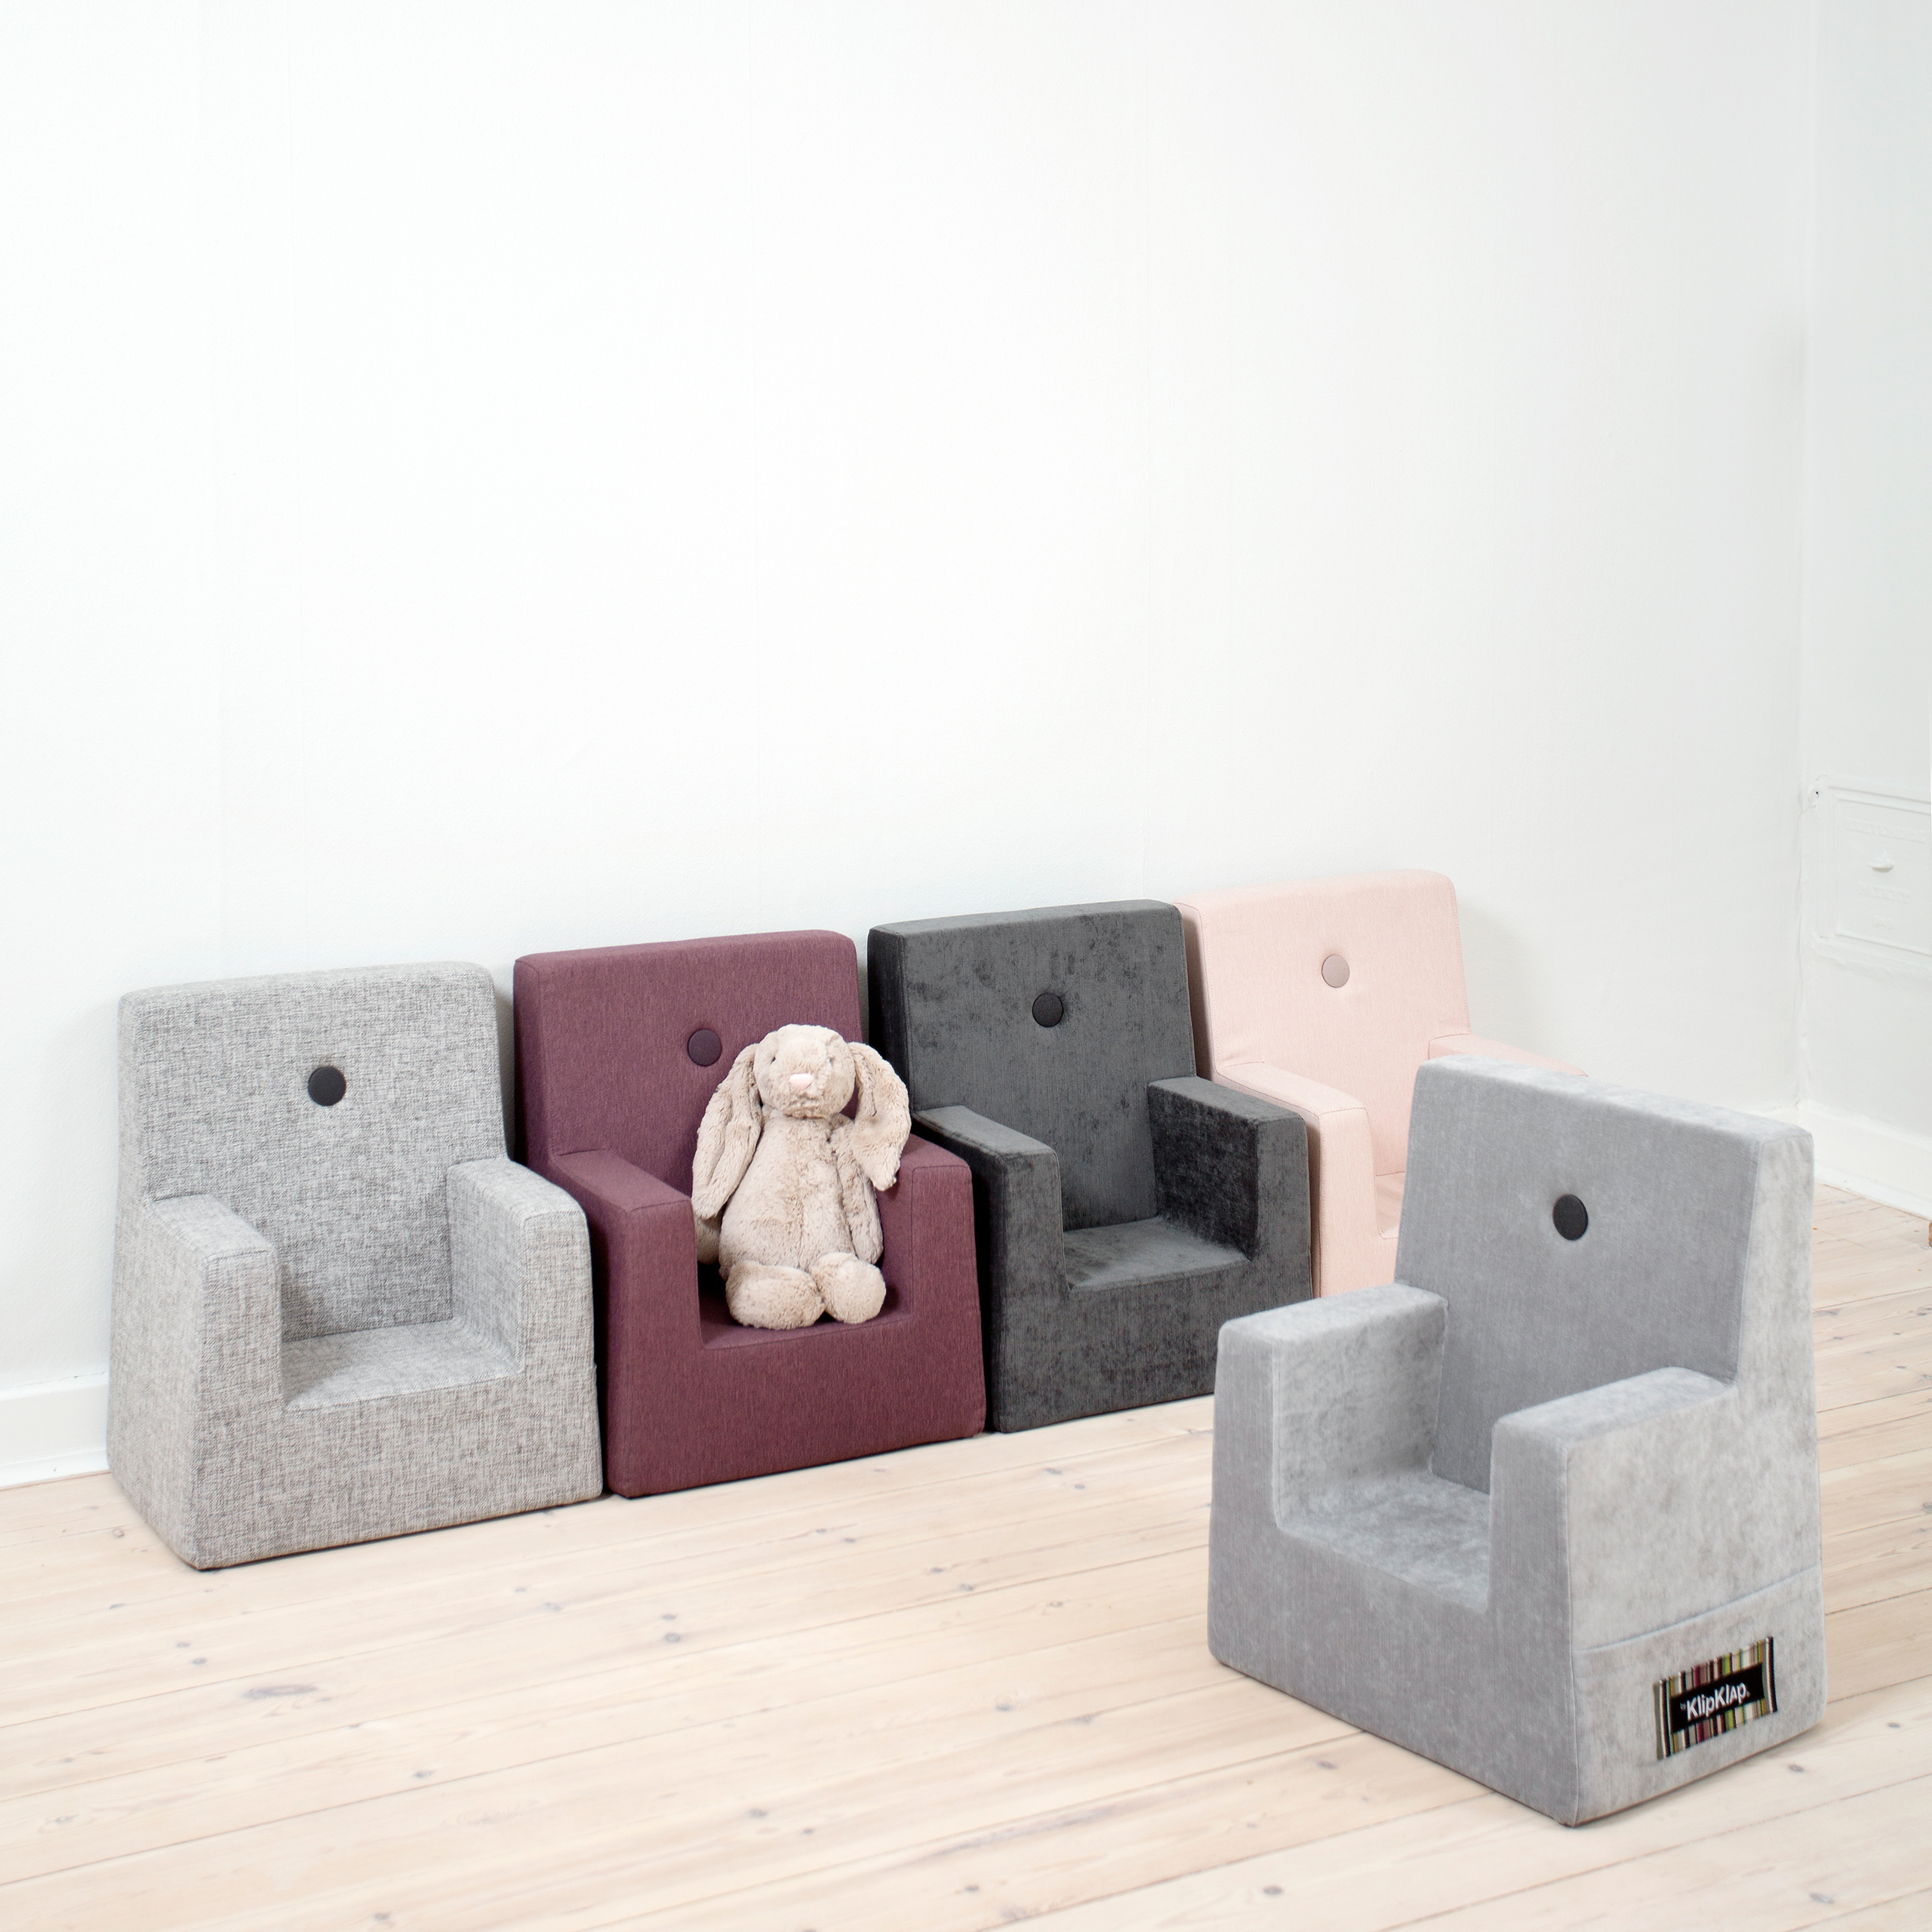 Kindersessel "KK Kids Chair" - Multi Grey / Grey